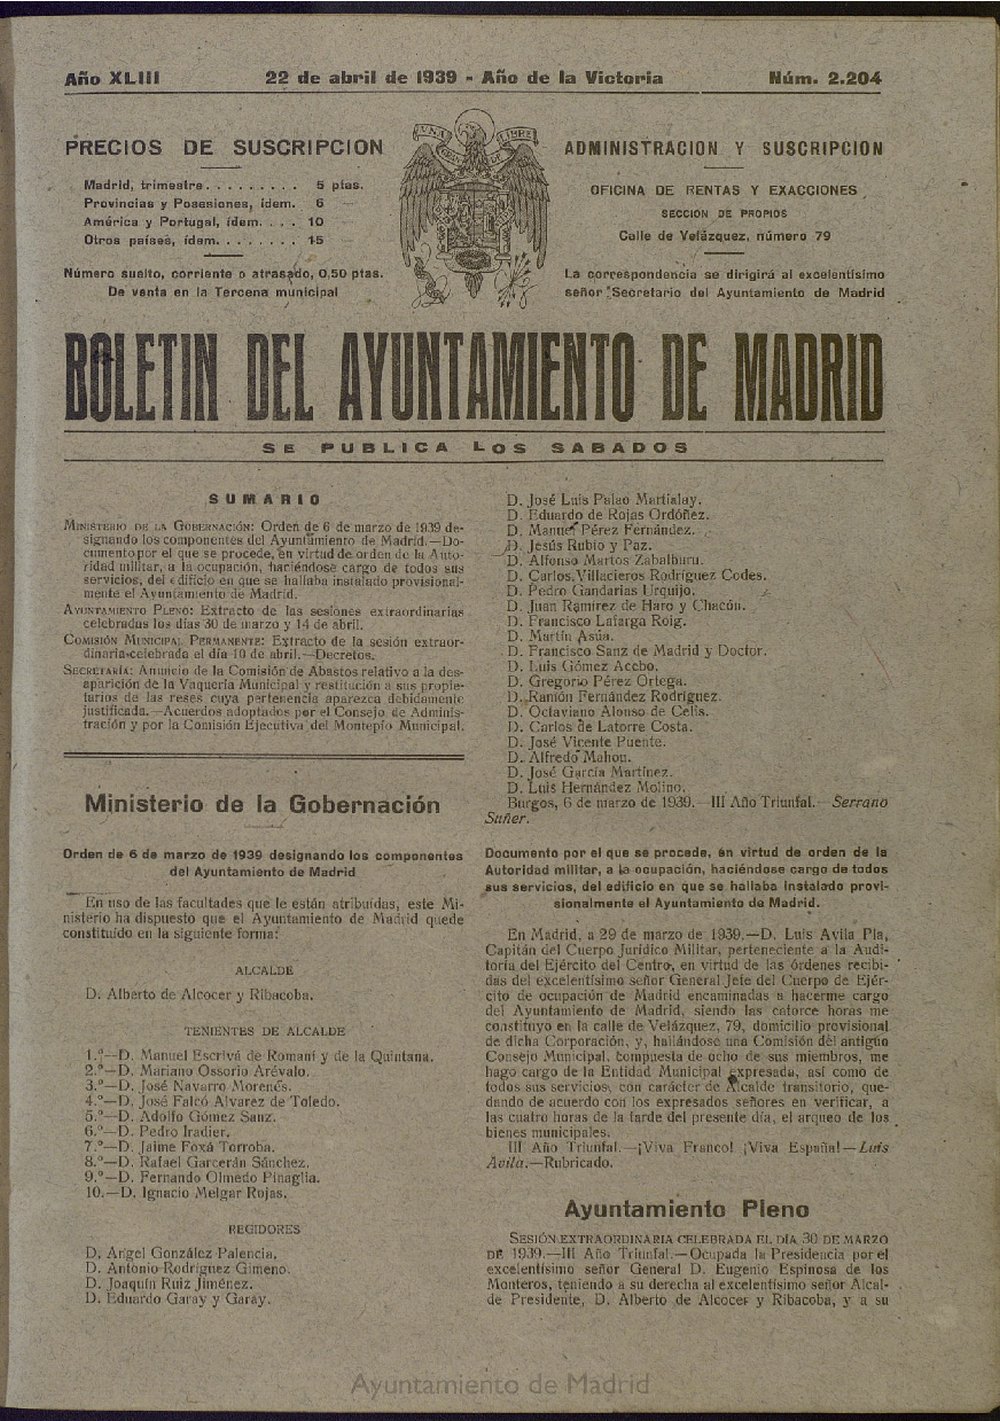 Boletín Oficial del Ayuntamiento de Madrid del 22 de abril de 1939, nº 2204 [sic]